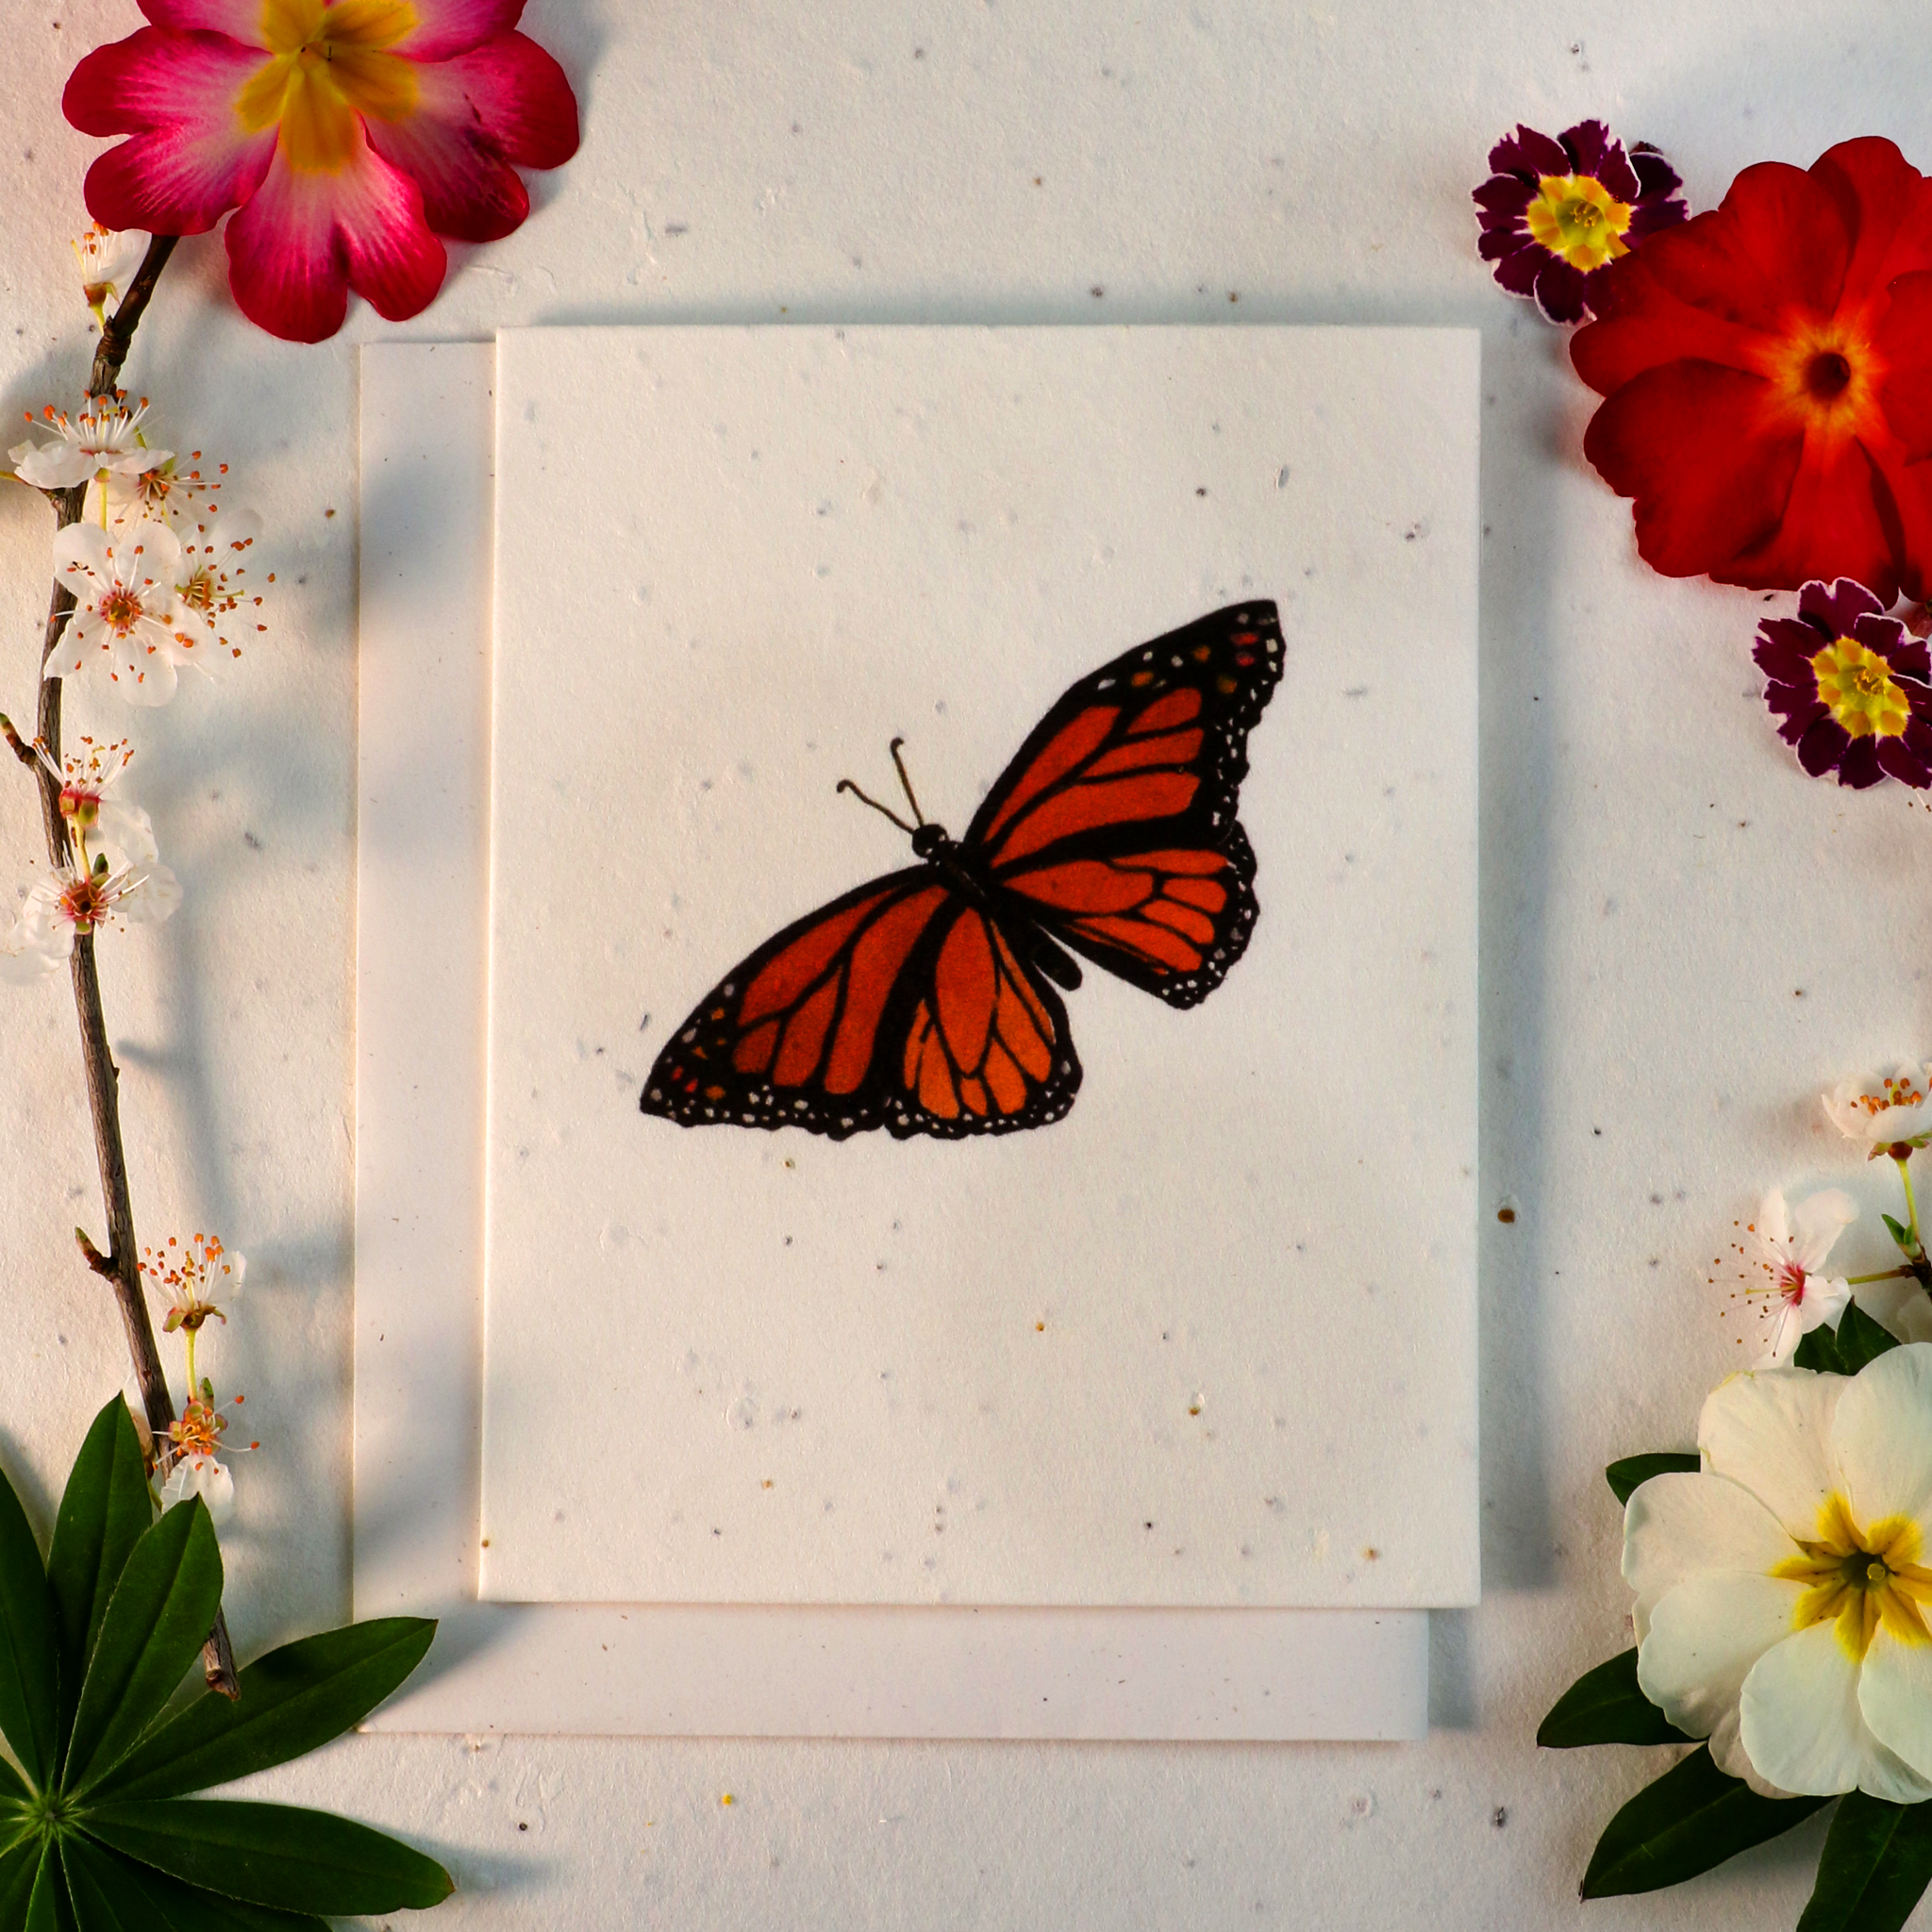 Gezaaide kaarten die uitgroeien tot bloemen (vlinder)